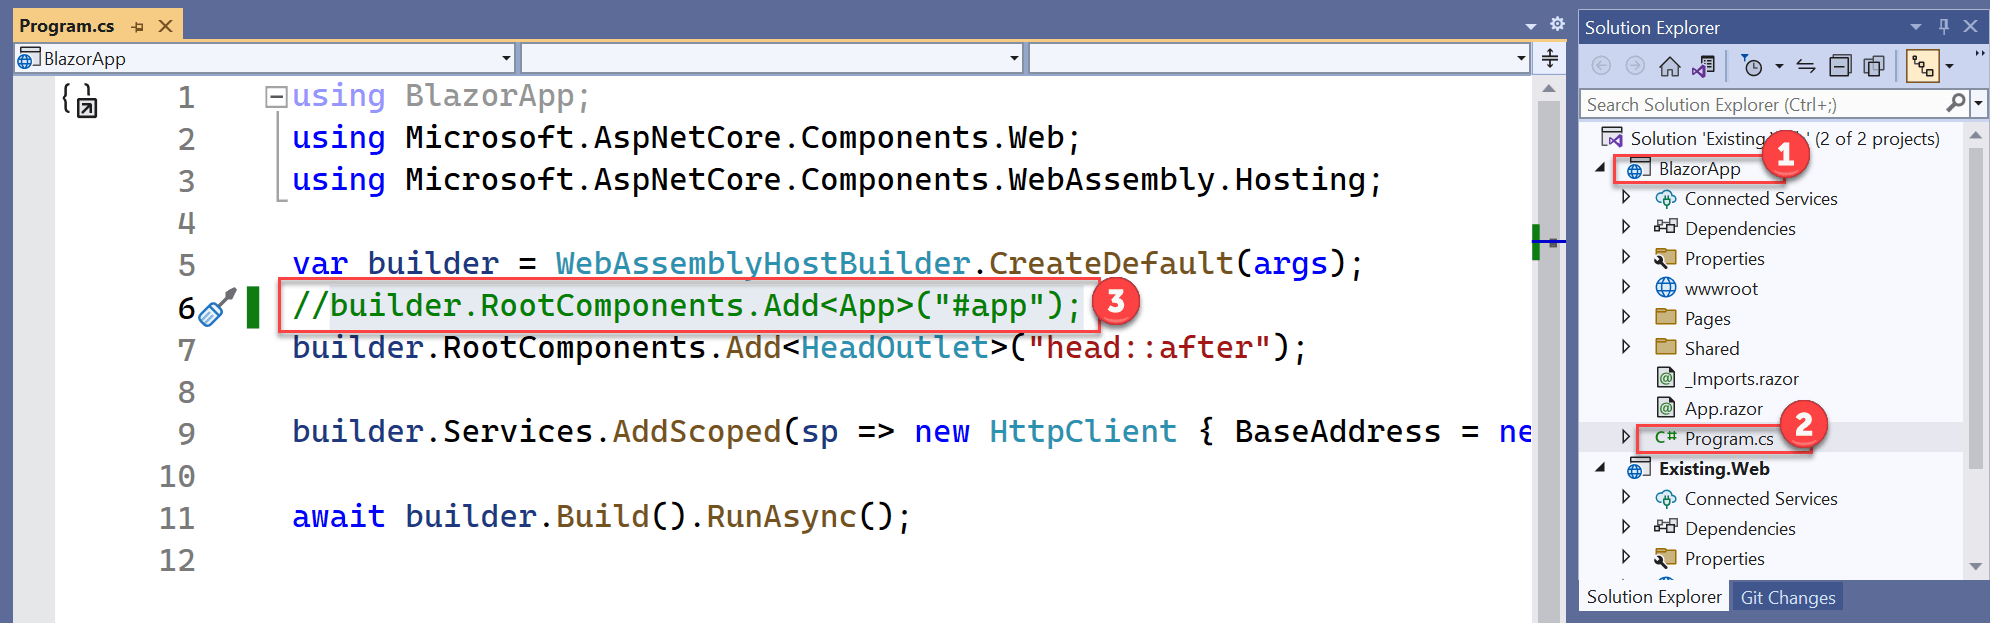 Visual Studio 2022 显示，其中展开了 BlazorApp 项目并选择了 Program.cs 代码文件。 在代码编辑器窗口中，上面提到的代码行被注释掉了。